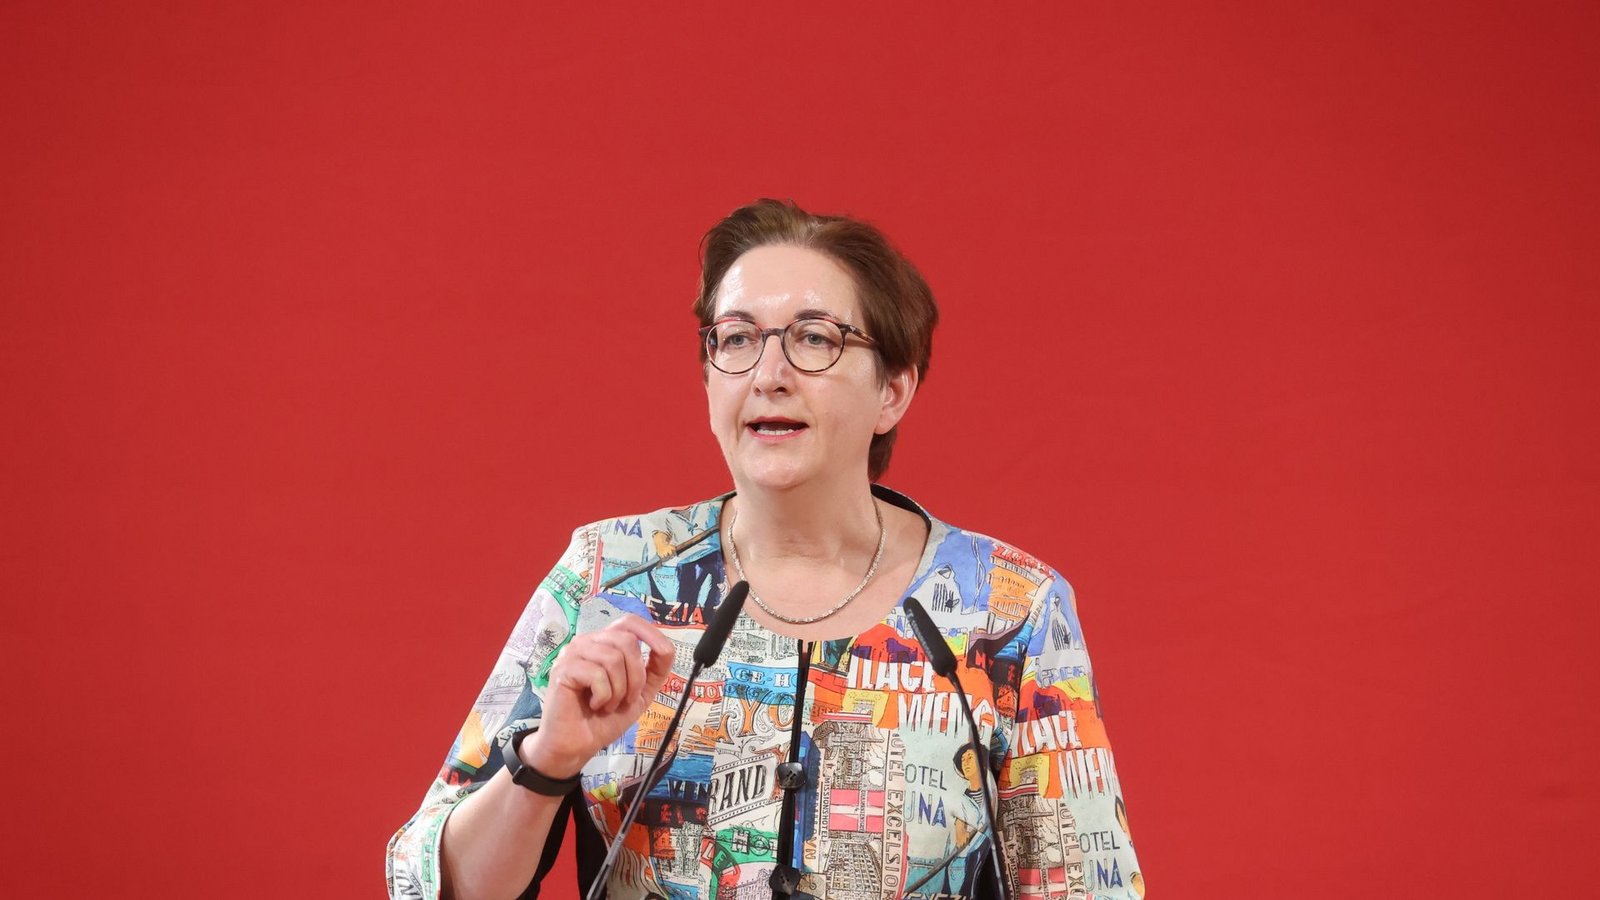 Bundesbauministerin Klara Geywitz ist mit Blick auf die demografische Entwicklung in Deutschland besorgt.Foto: Bodo Schackow/dpa